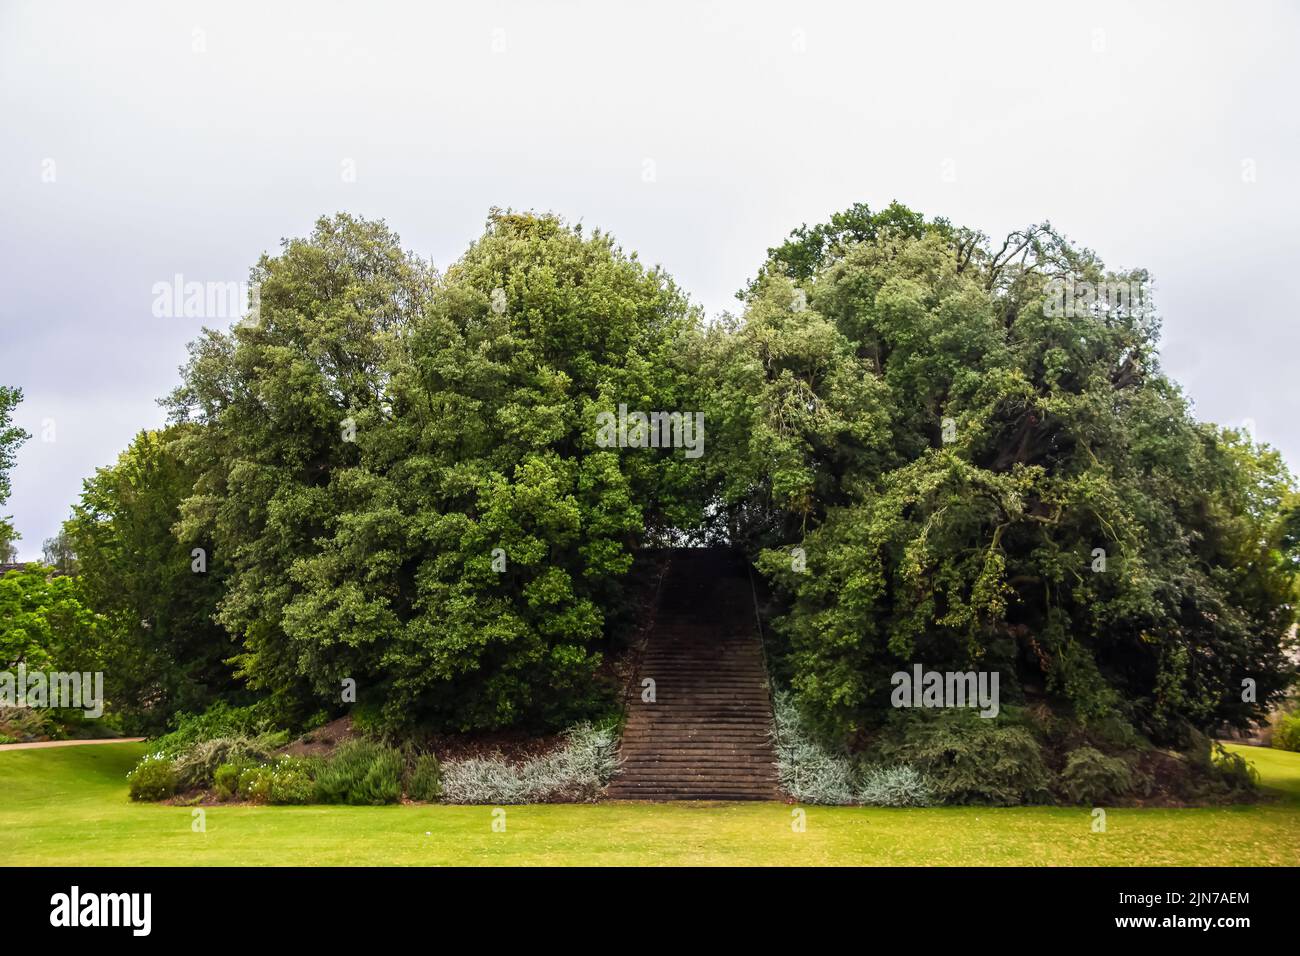 Escalera al cielo o a ninguna parte - Old Folly en Inglaterra - montículo cubierto de árboles y escaleras a la cima en un hermoso césped verde Foto de stock